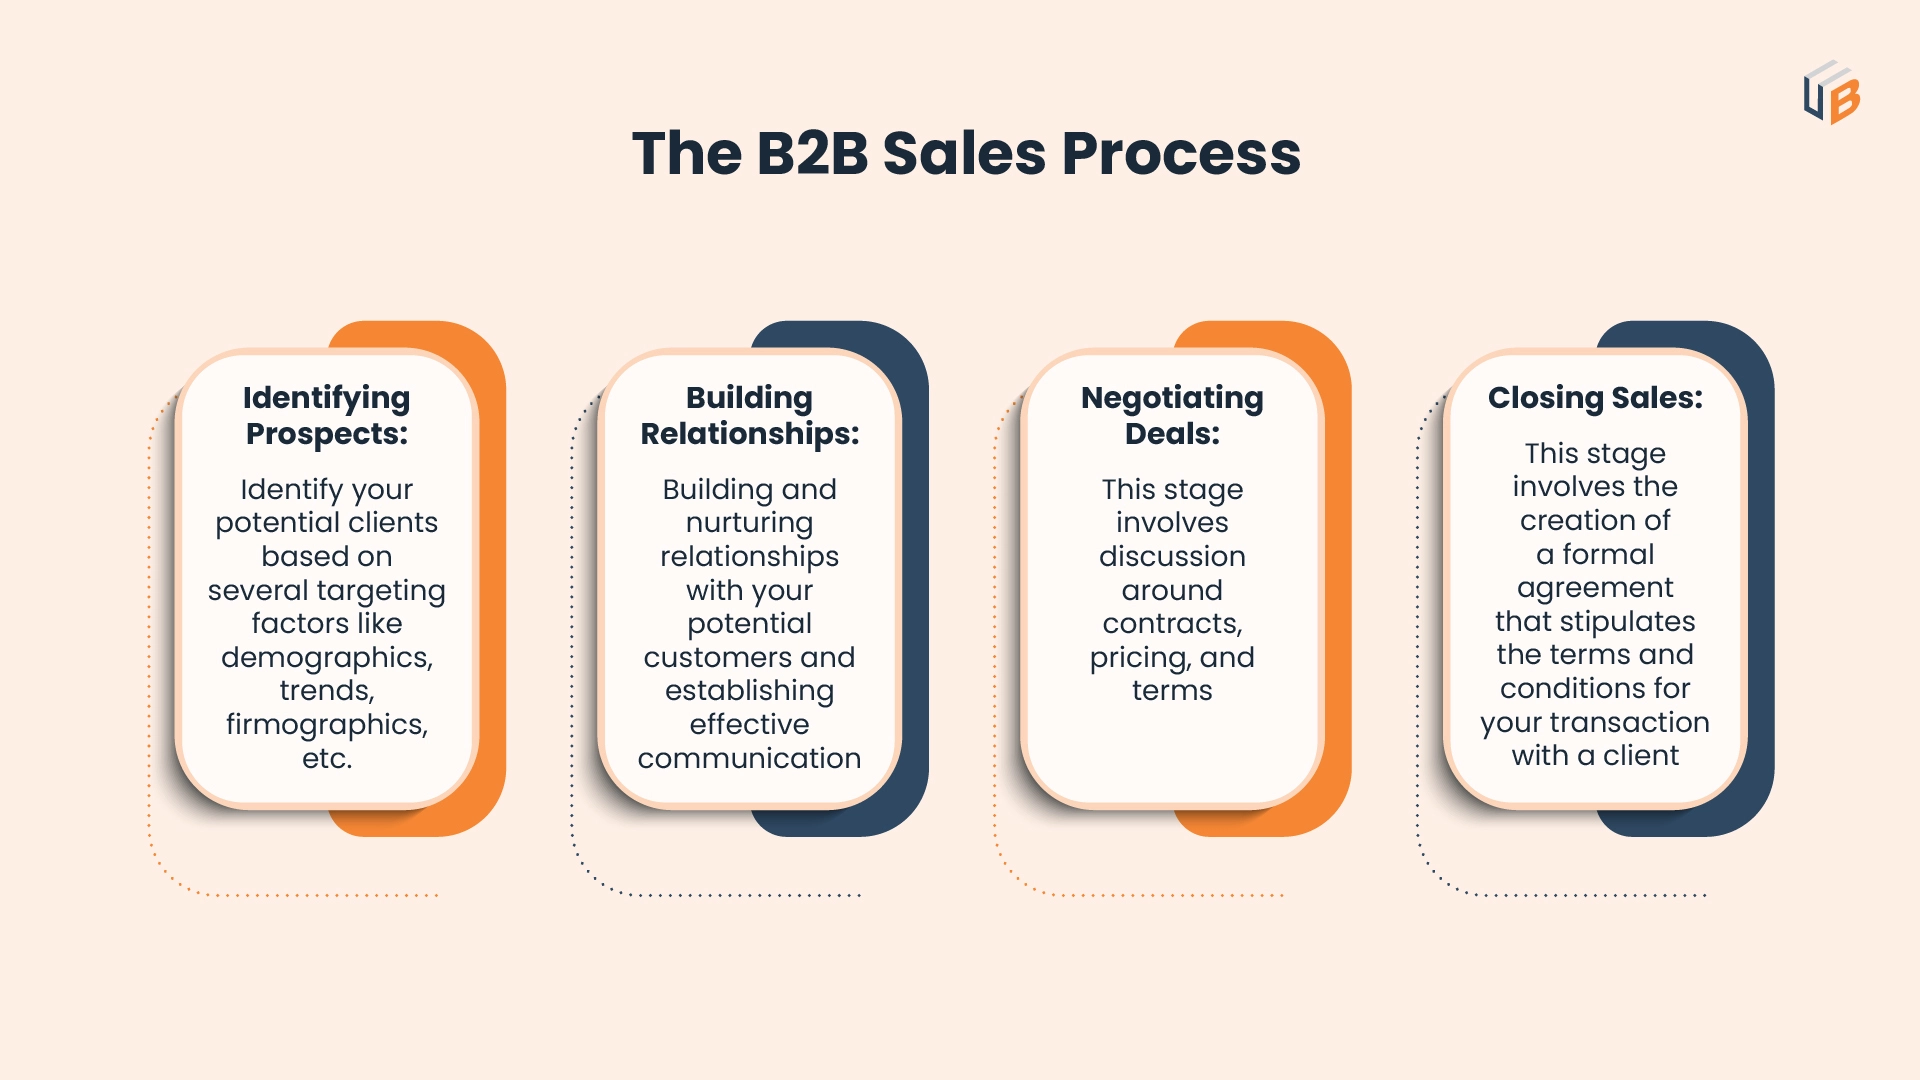 The B2B Sales Process